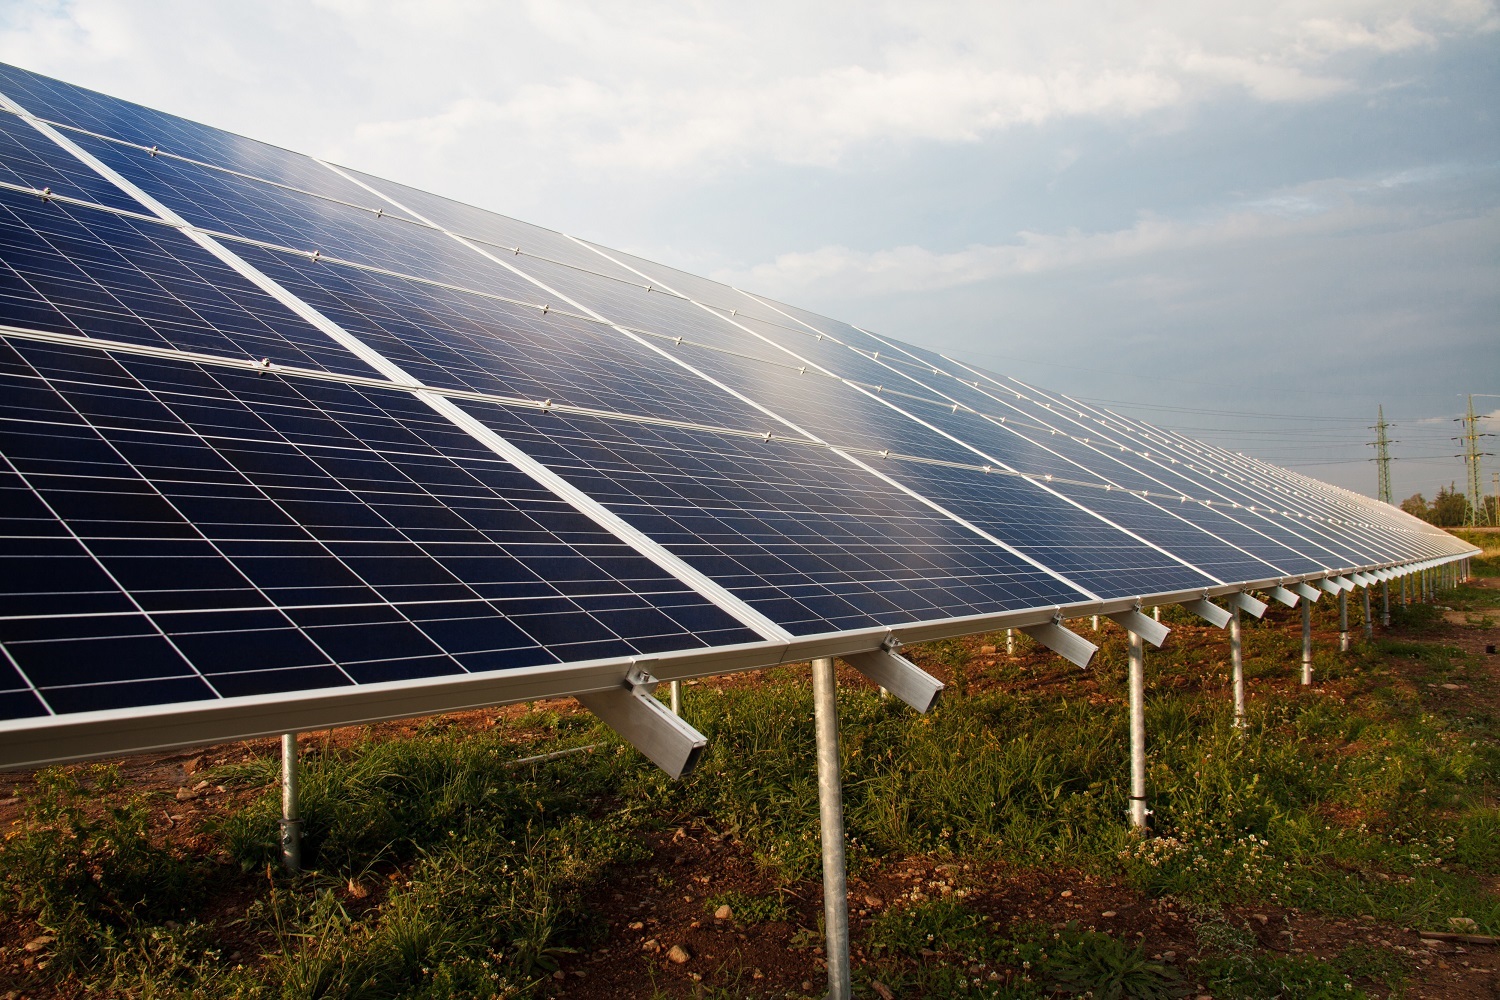 Start-up-ul românesc ECITIM vrea să devină producător de energie în primul trimestru din 2024 şi să dezvolte opt parcuri fotovoltaice anul viitor, pe care ulterior le va vinde